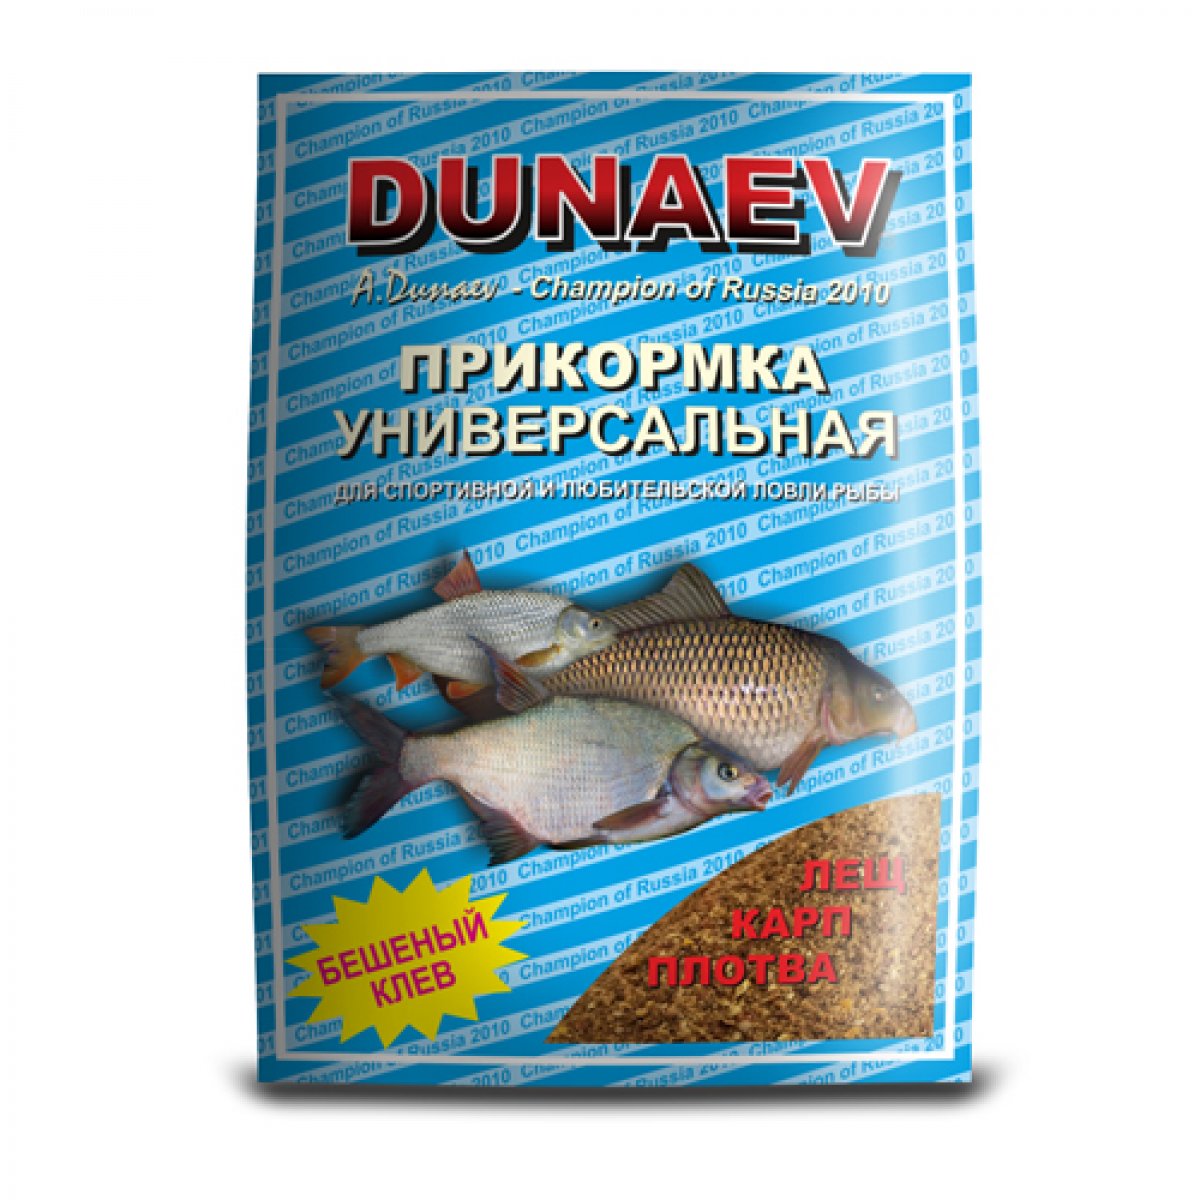 Прикормка Dunaev классика 0,9кг универсальная - фото 1